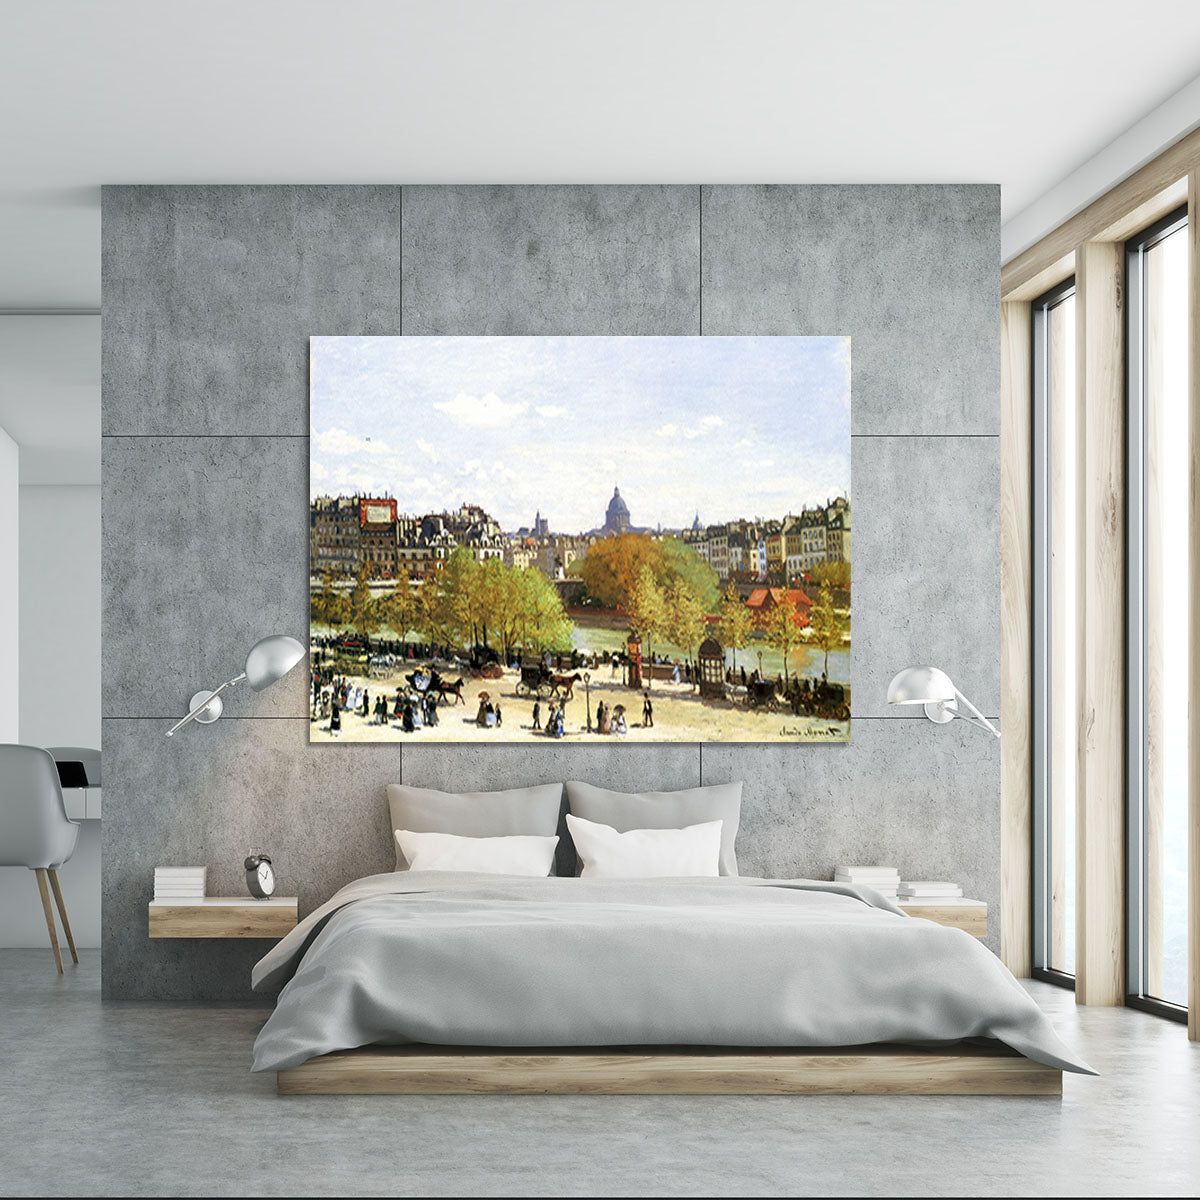 Le quai du Louvre by Monet Canvas Print or Poster - Canvas Art Rocks - 5